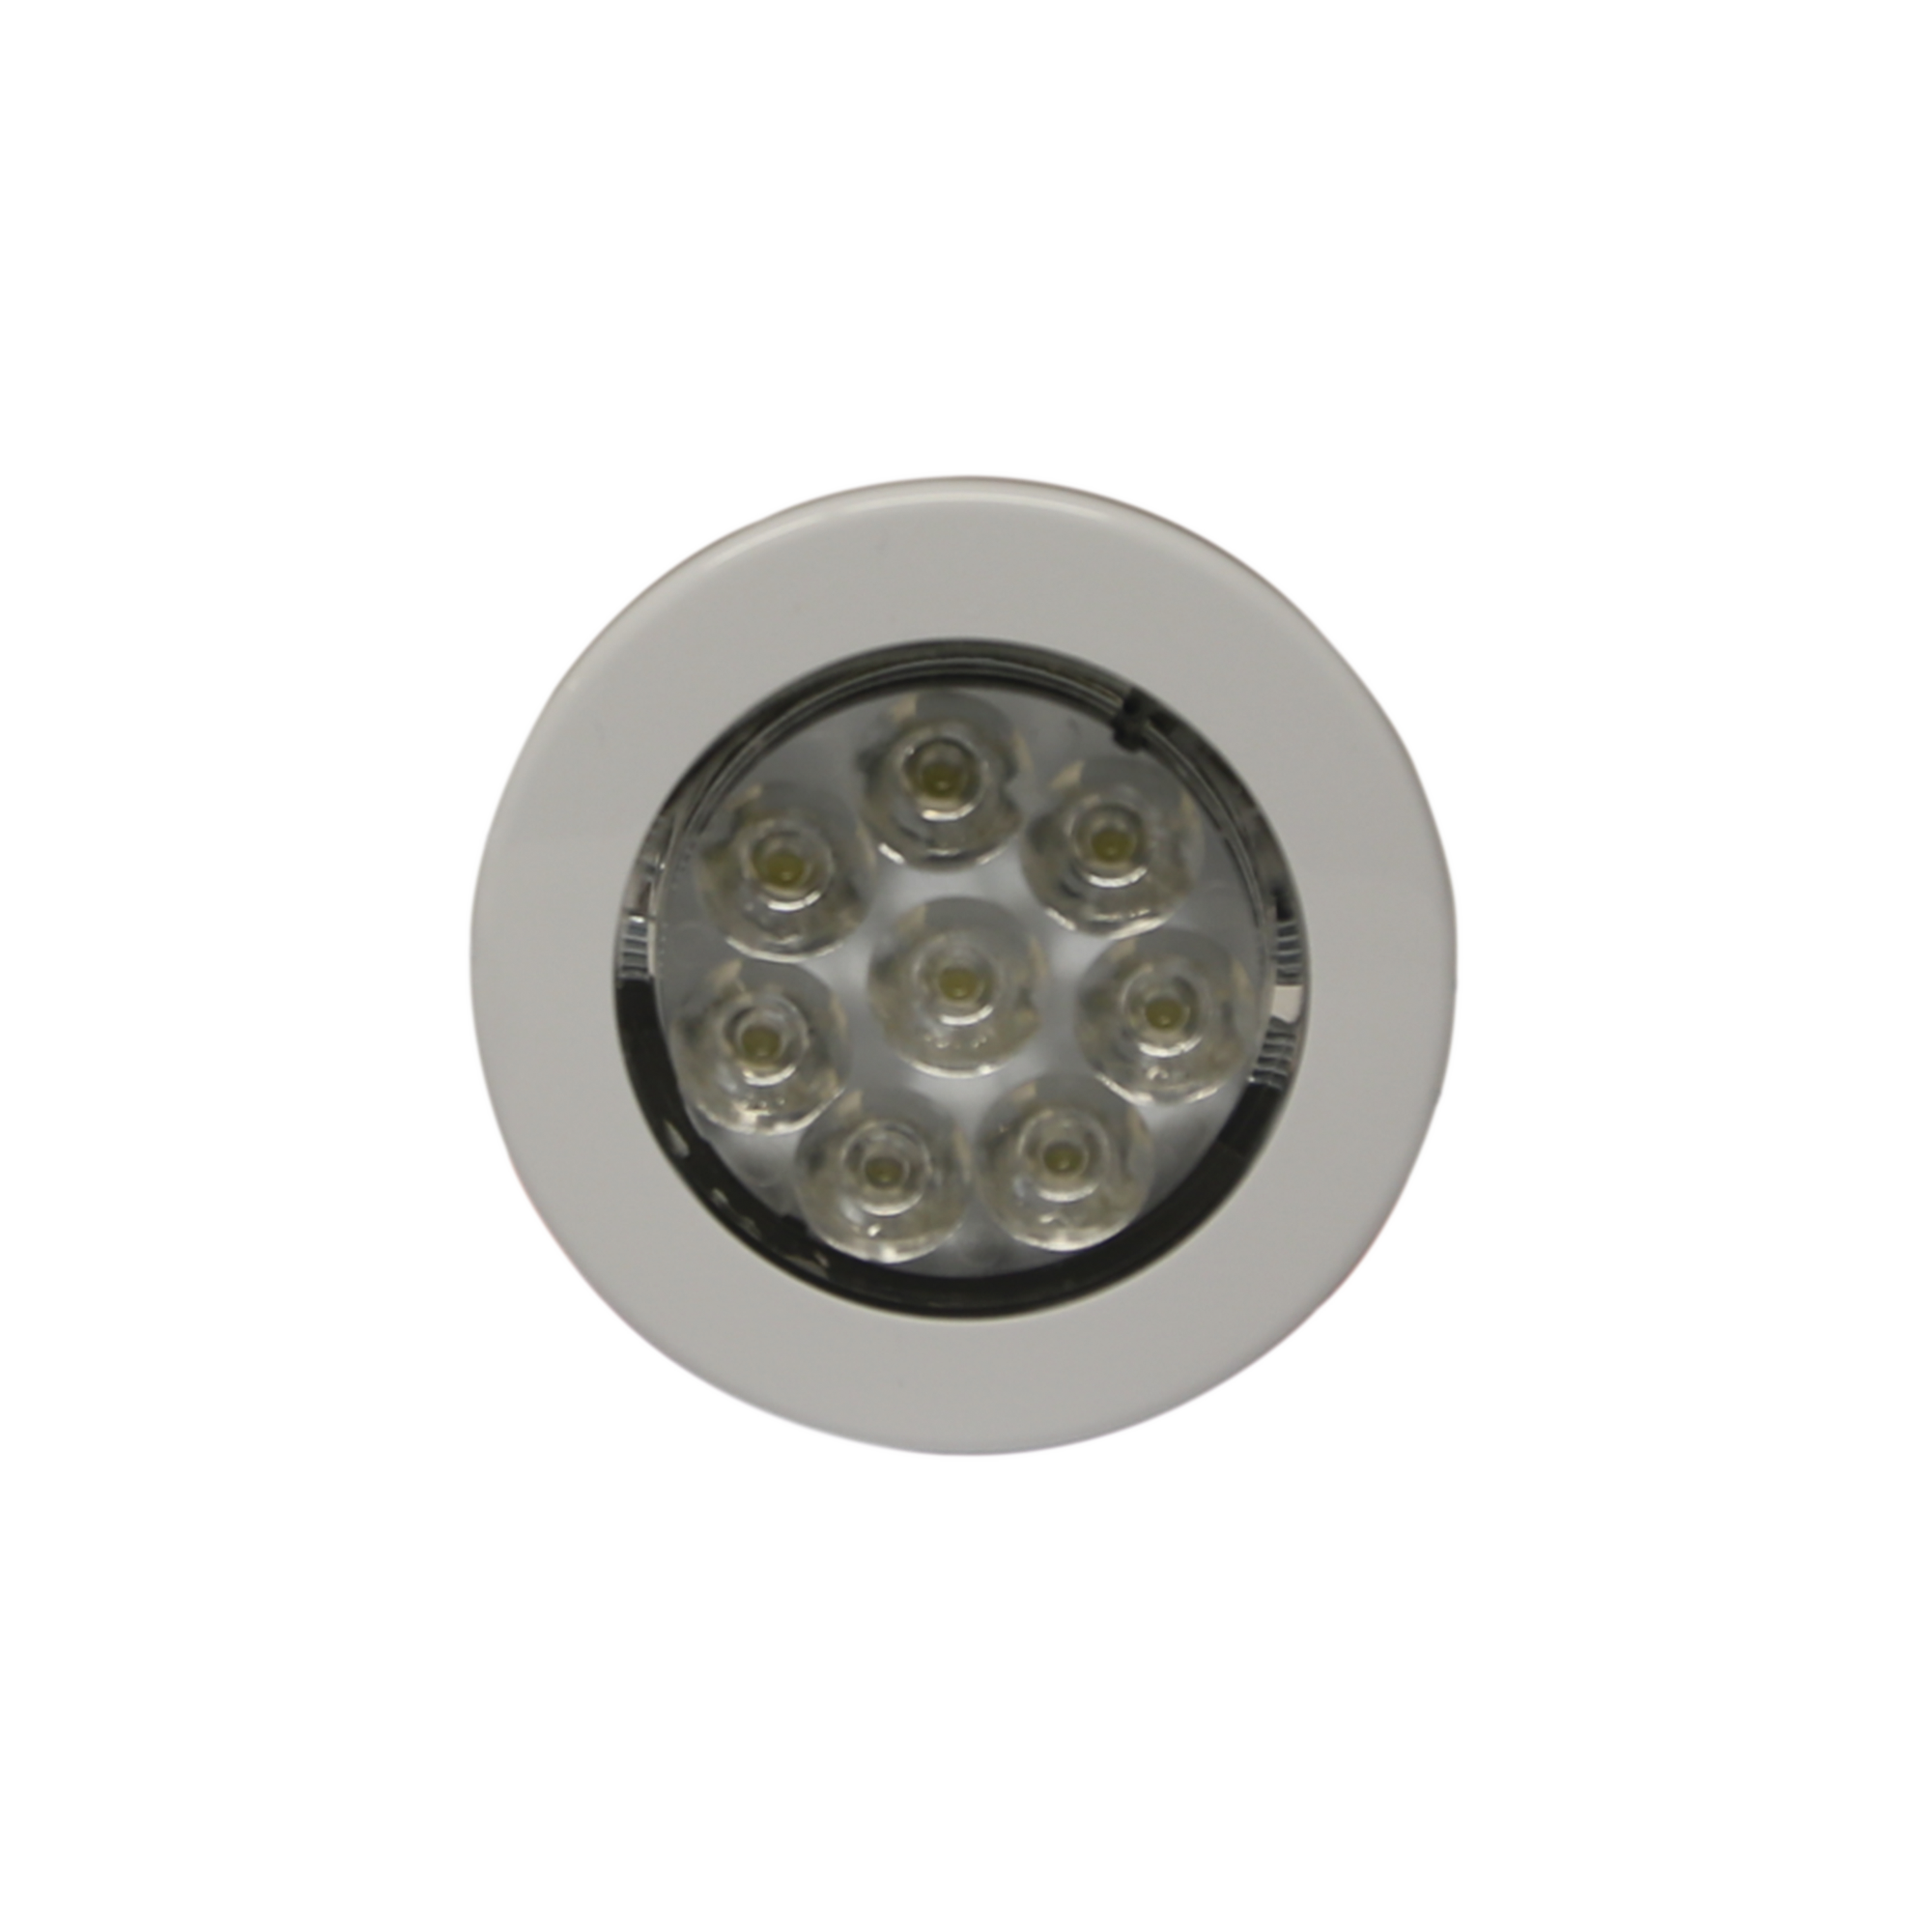 Mini luz de cortesía de 8 LEDs circular con bisel blanco 2.8"